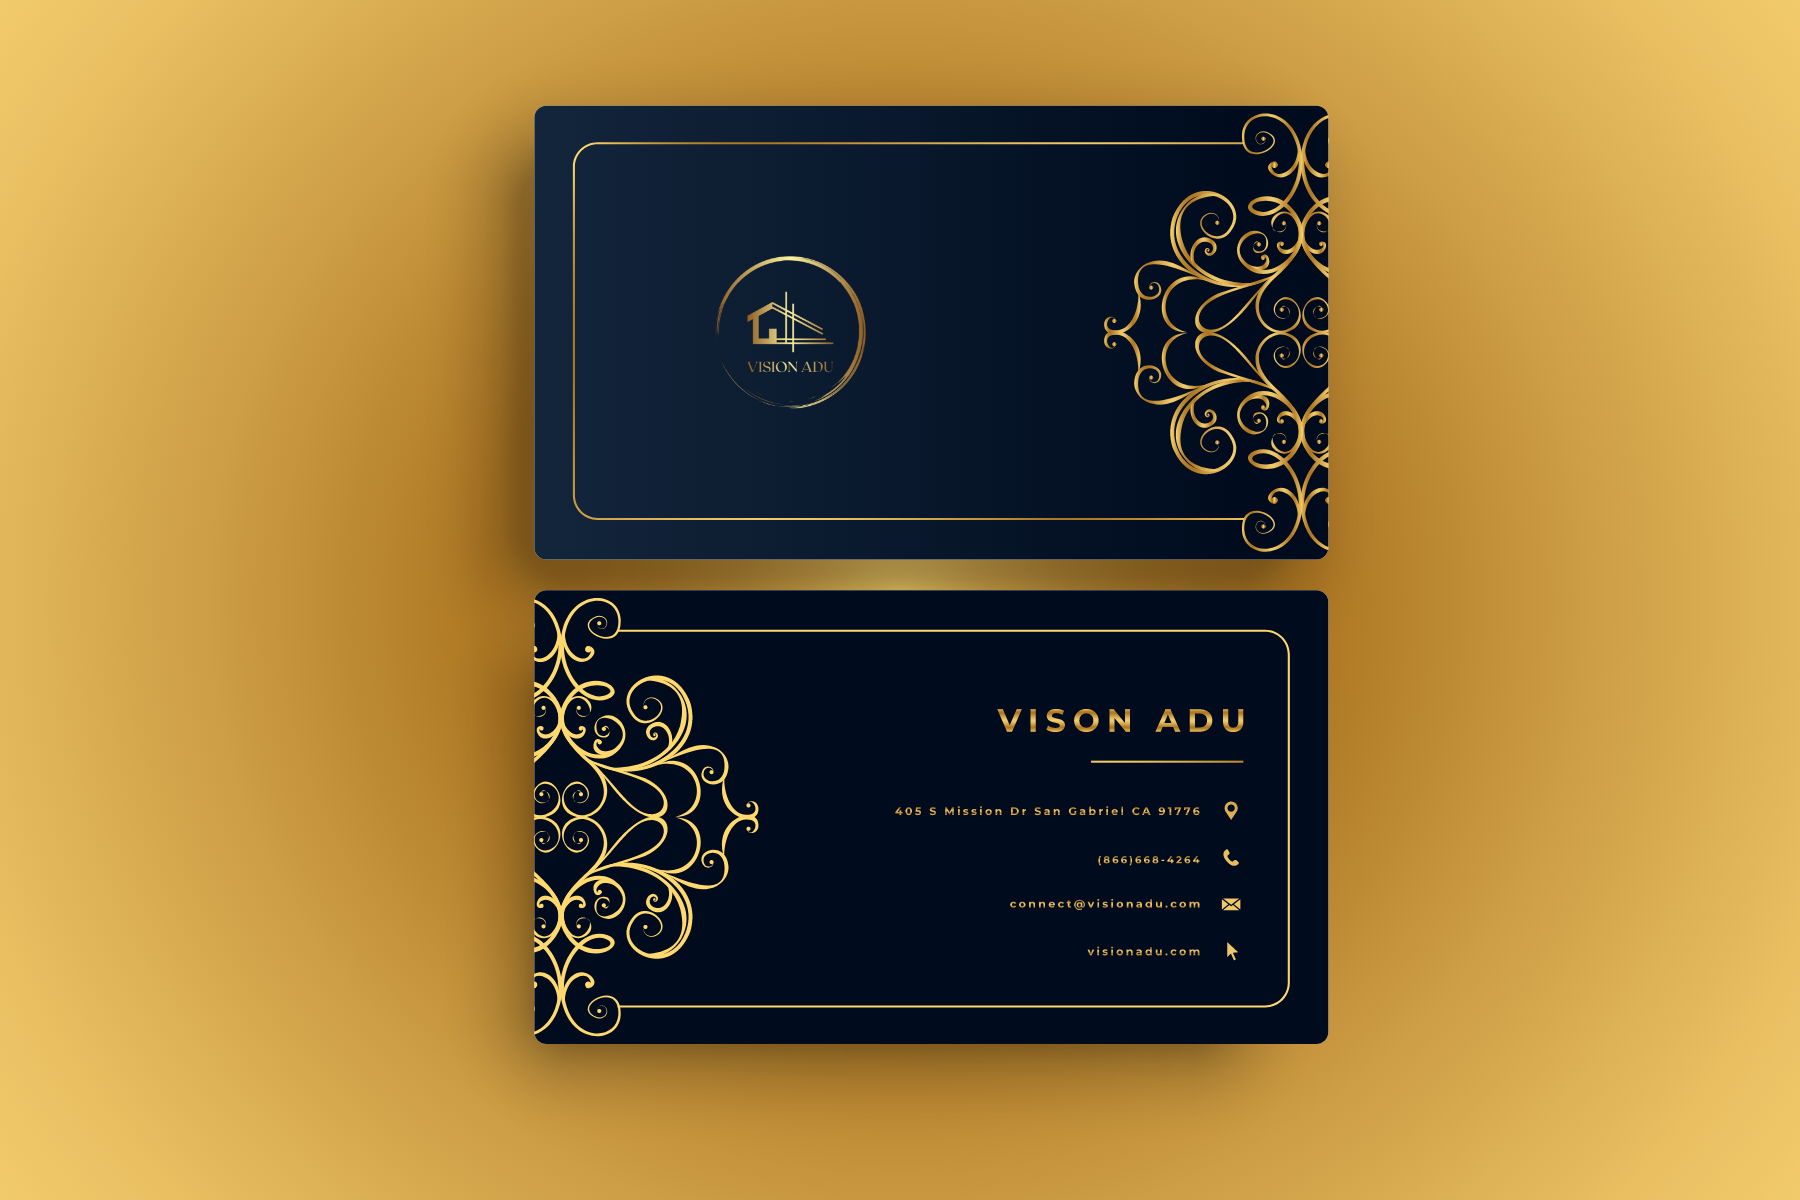 Vision-ADU – 2